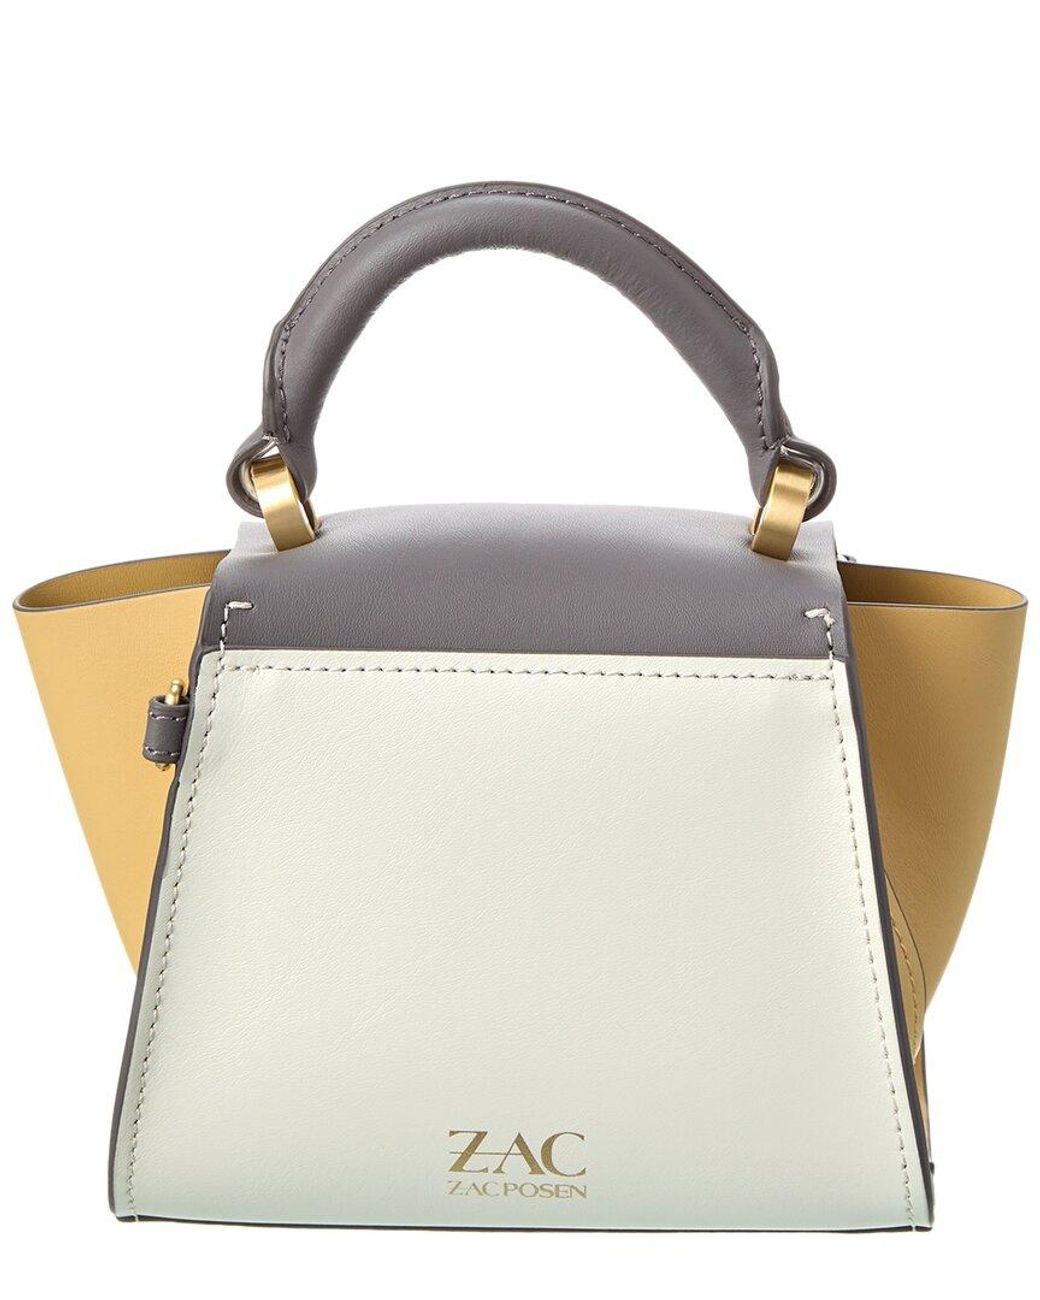 ZAC POSEN Eartha Mini Top-Handle Leather Crossbody - Macy's